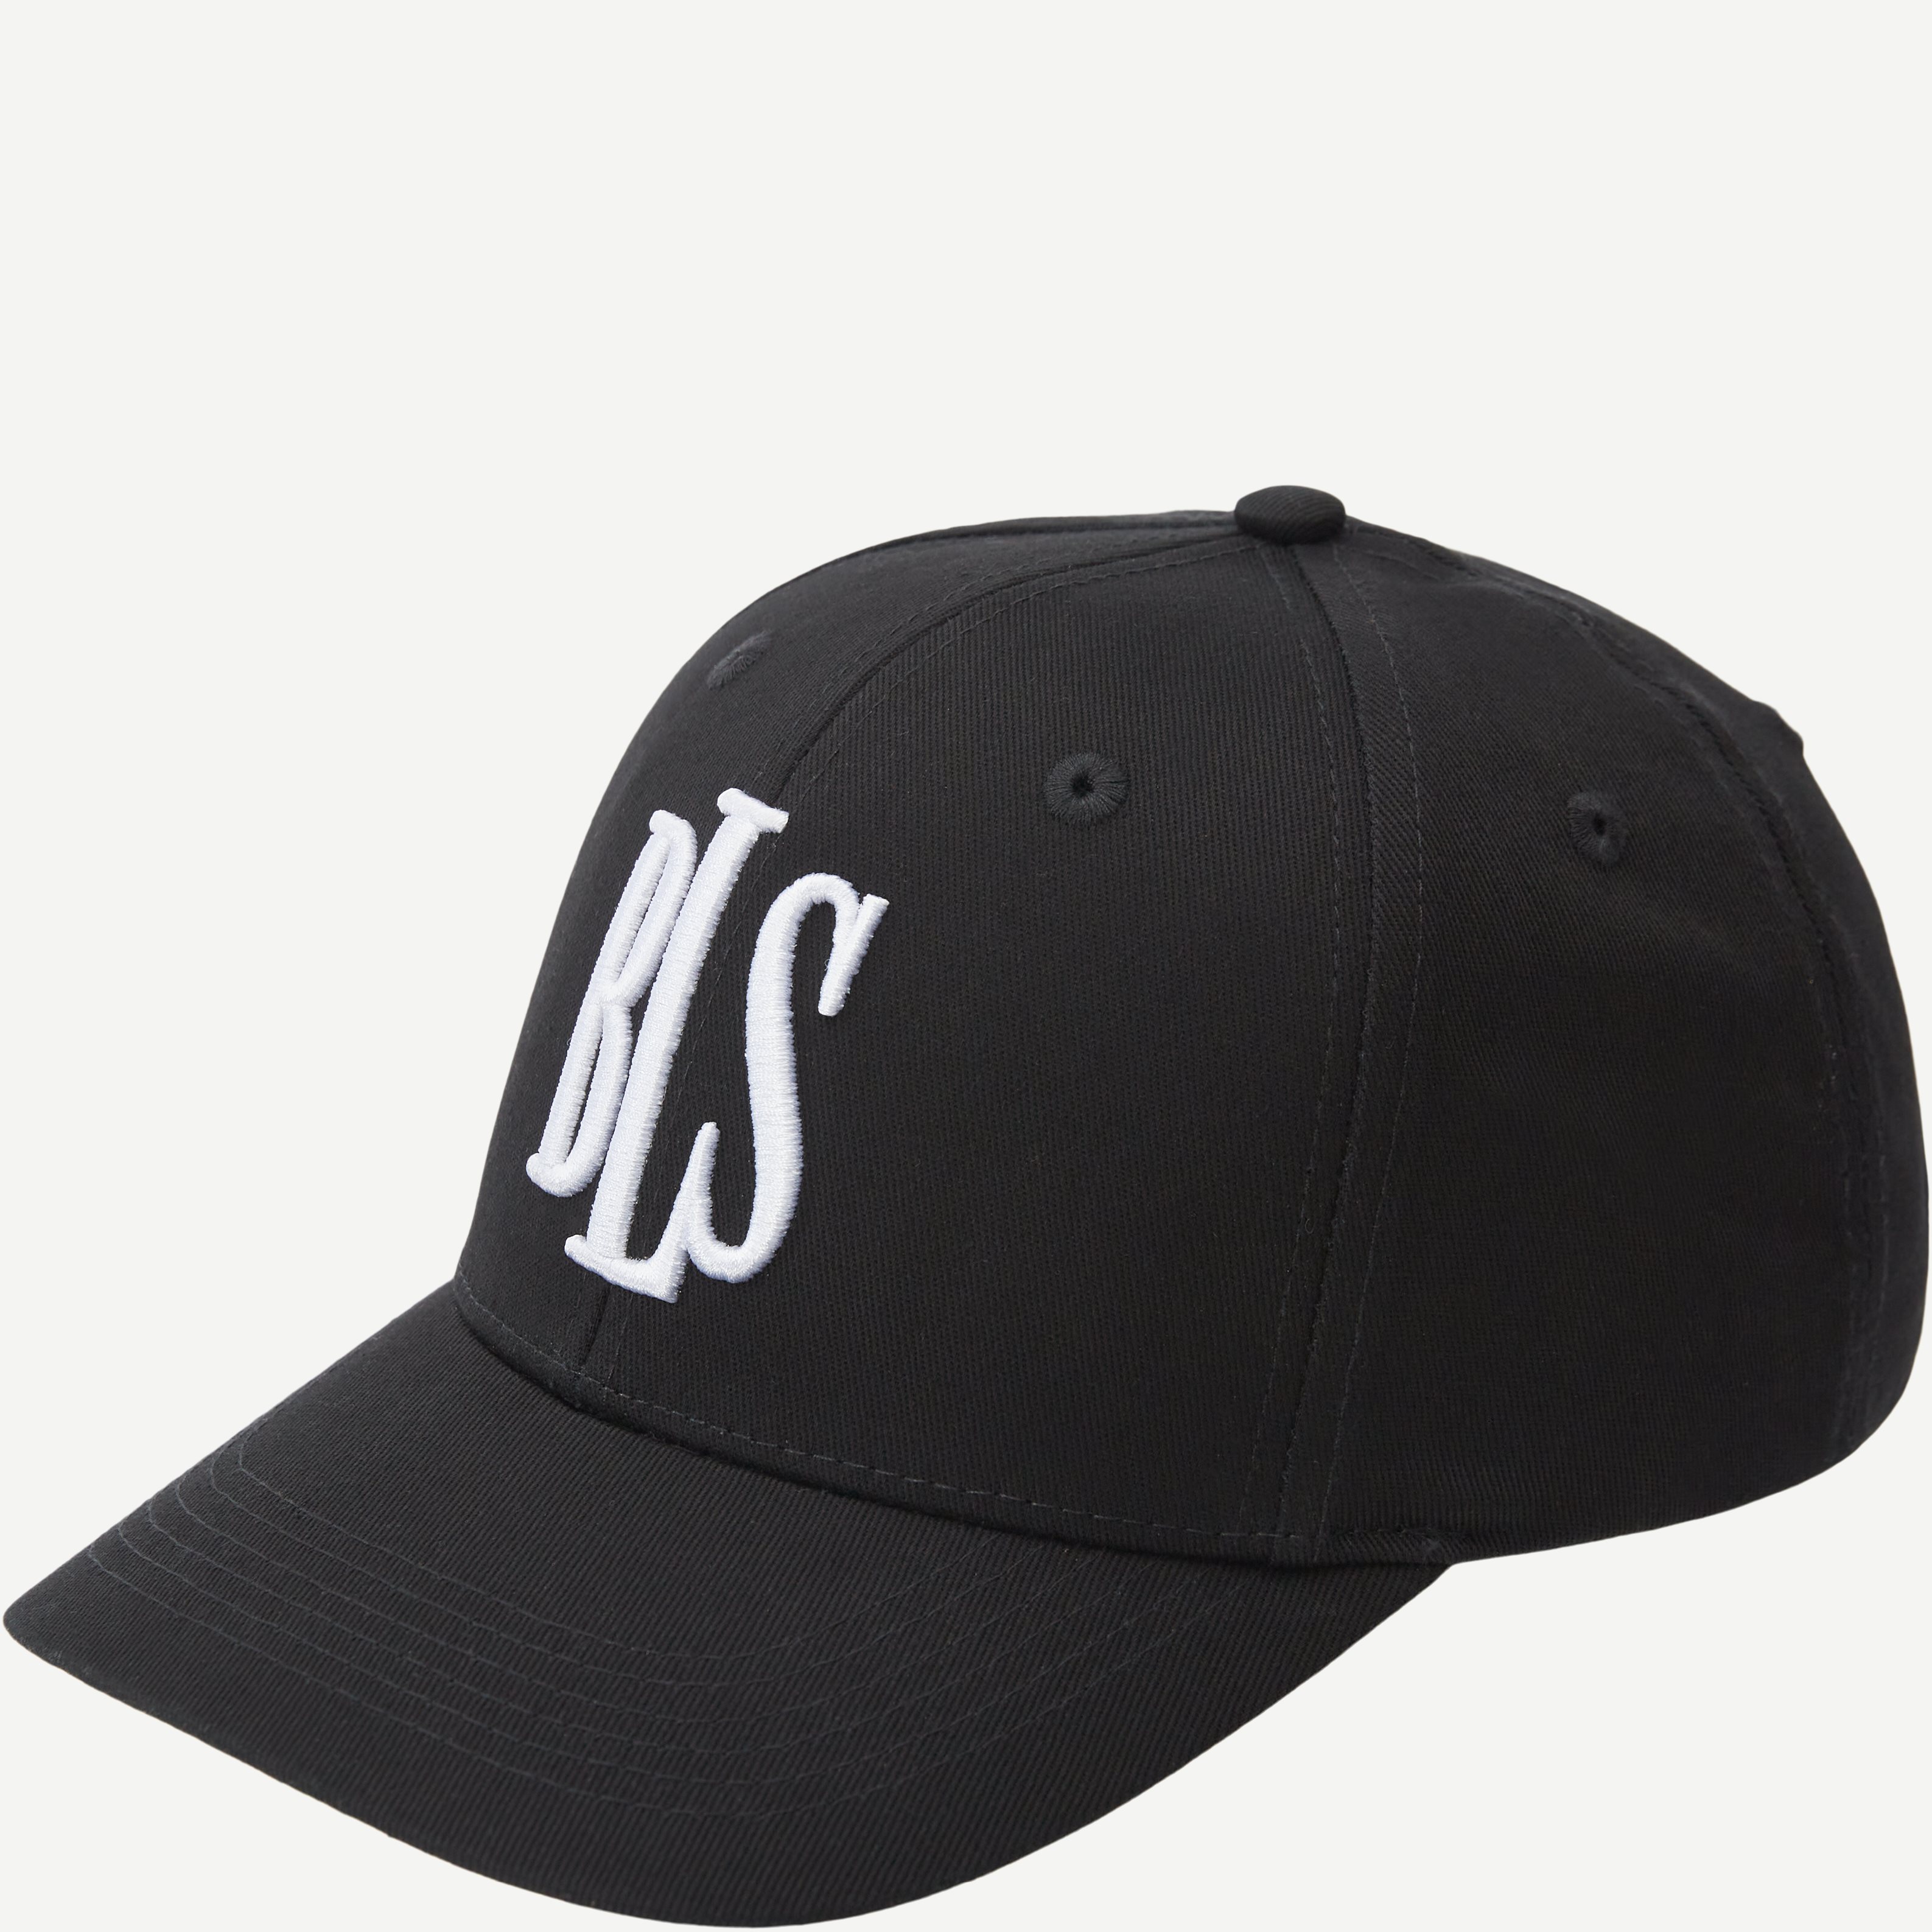 BLS Caps CLASSIC BASEBALL CAP BLACK 99101 Sort